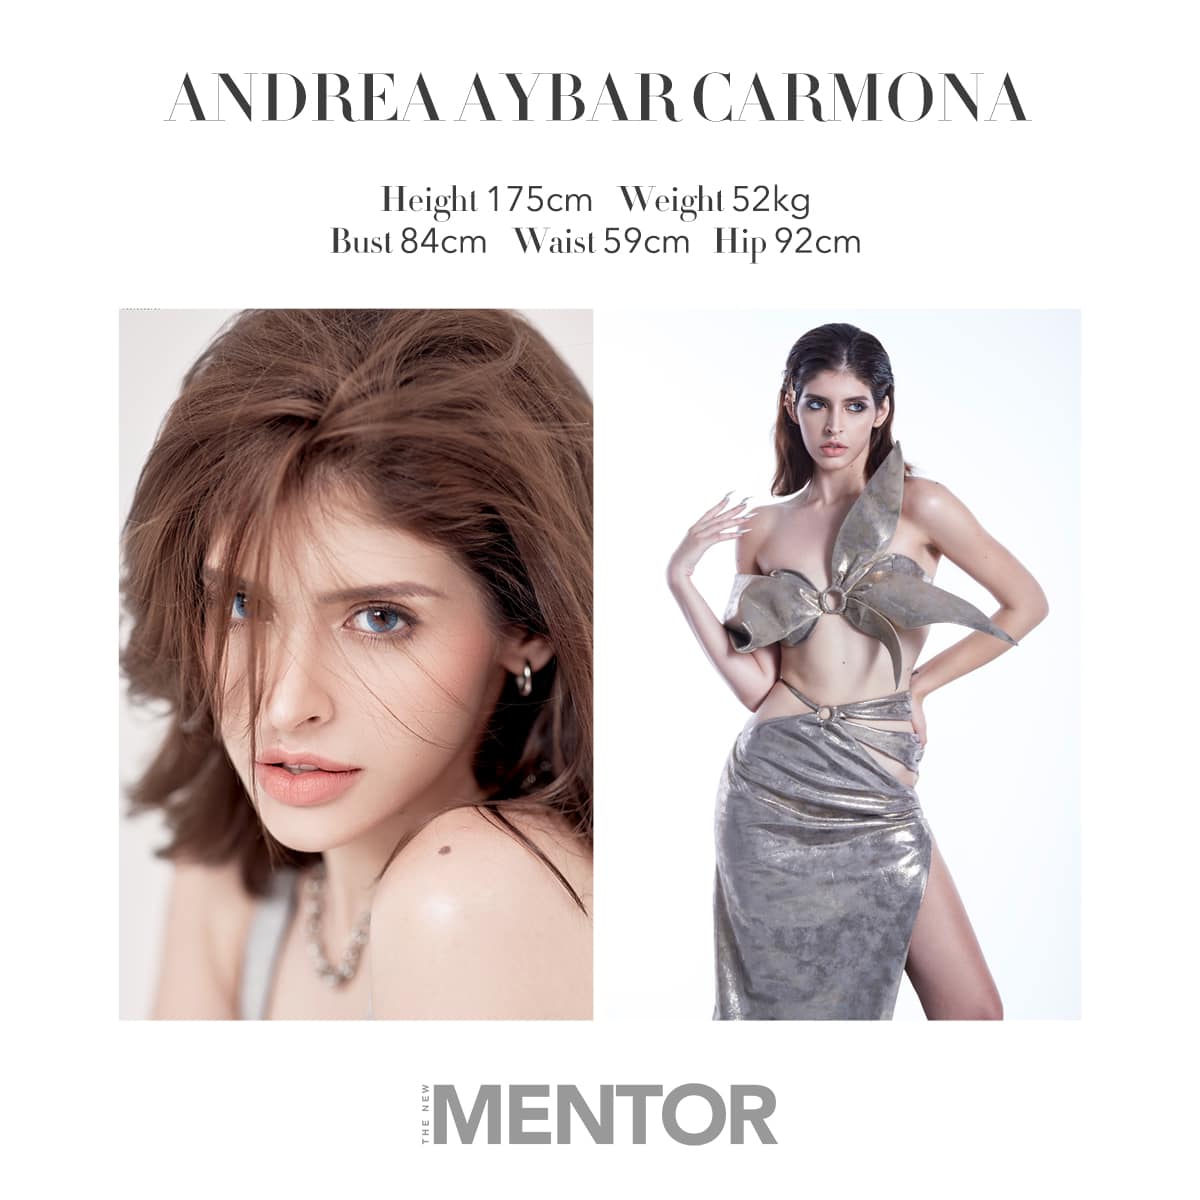 Nhà sản xuất The New Mentor nói gì về việc cắt sóng người mẫu Andrea Aybar vì nghi vấn dùng chất cấm?  - Ảnh 2.